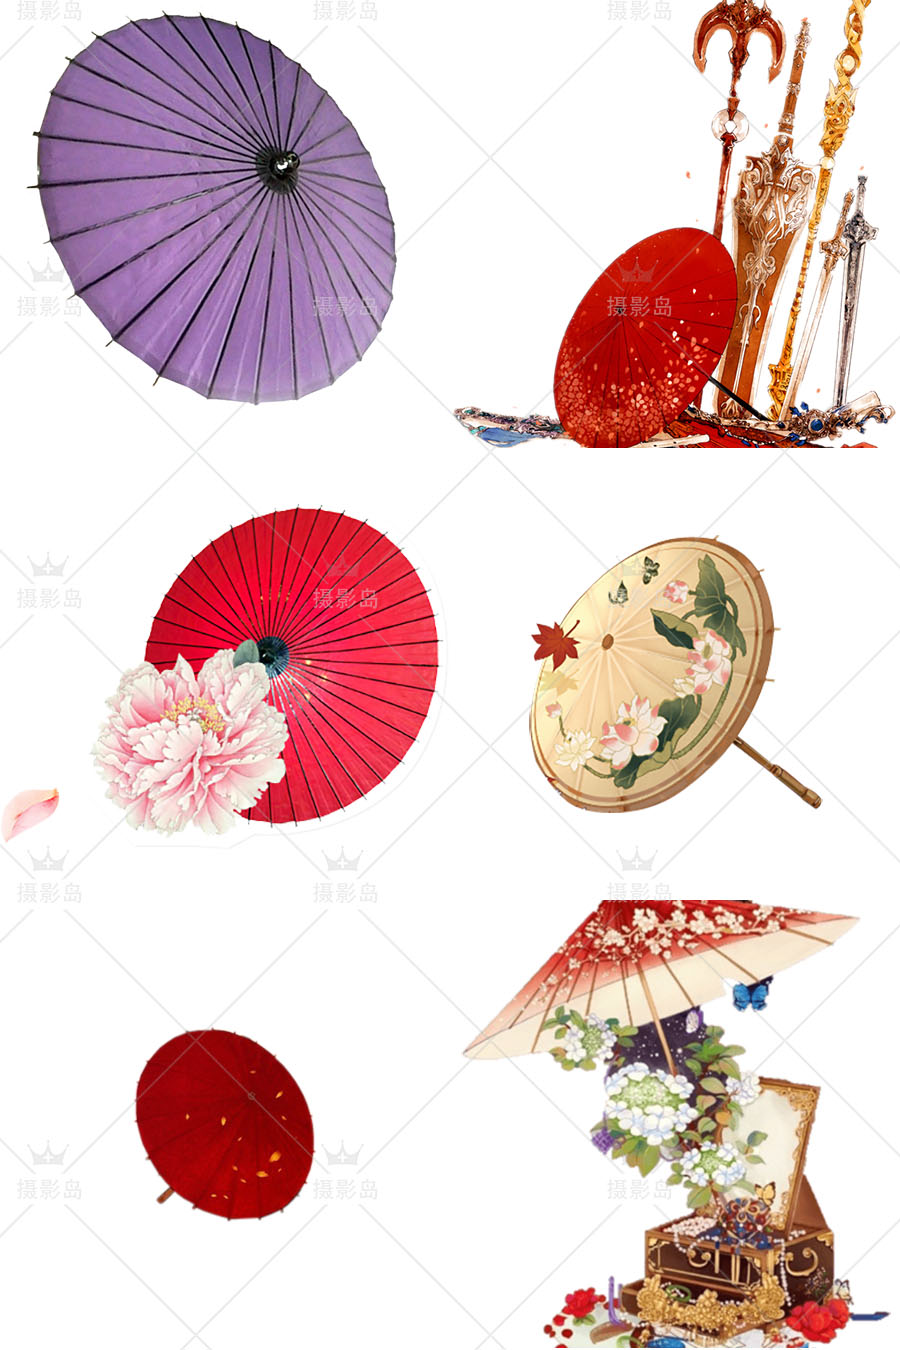 古风油纸伞、古代传统雨伞、汉服伞、花伞、绸布伞图片免抠PS素材